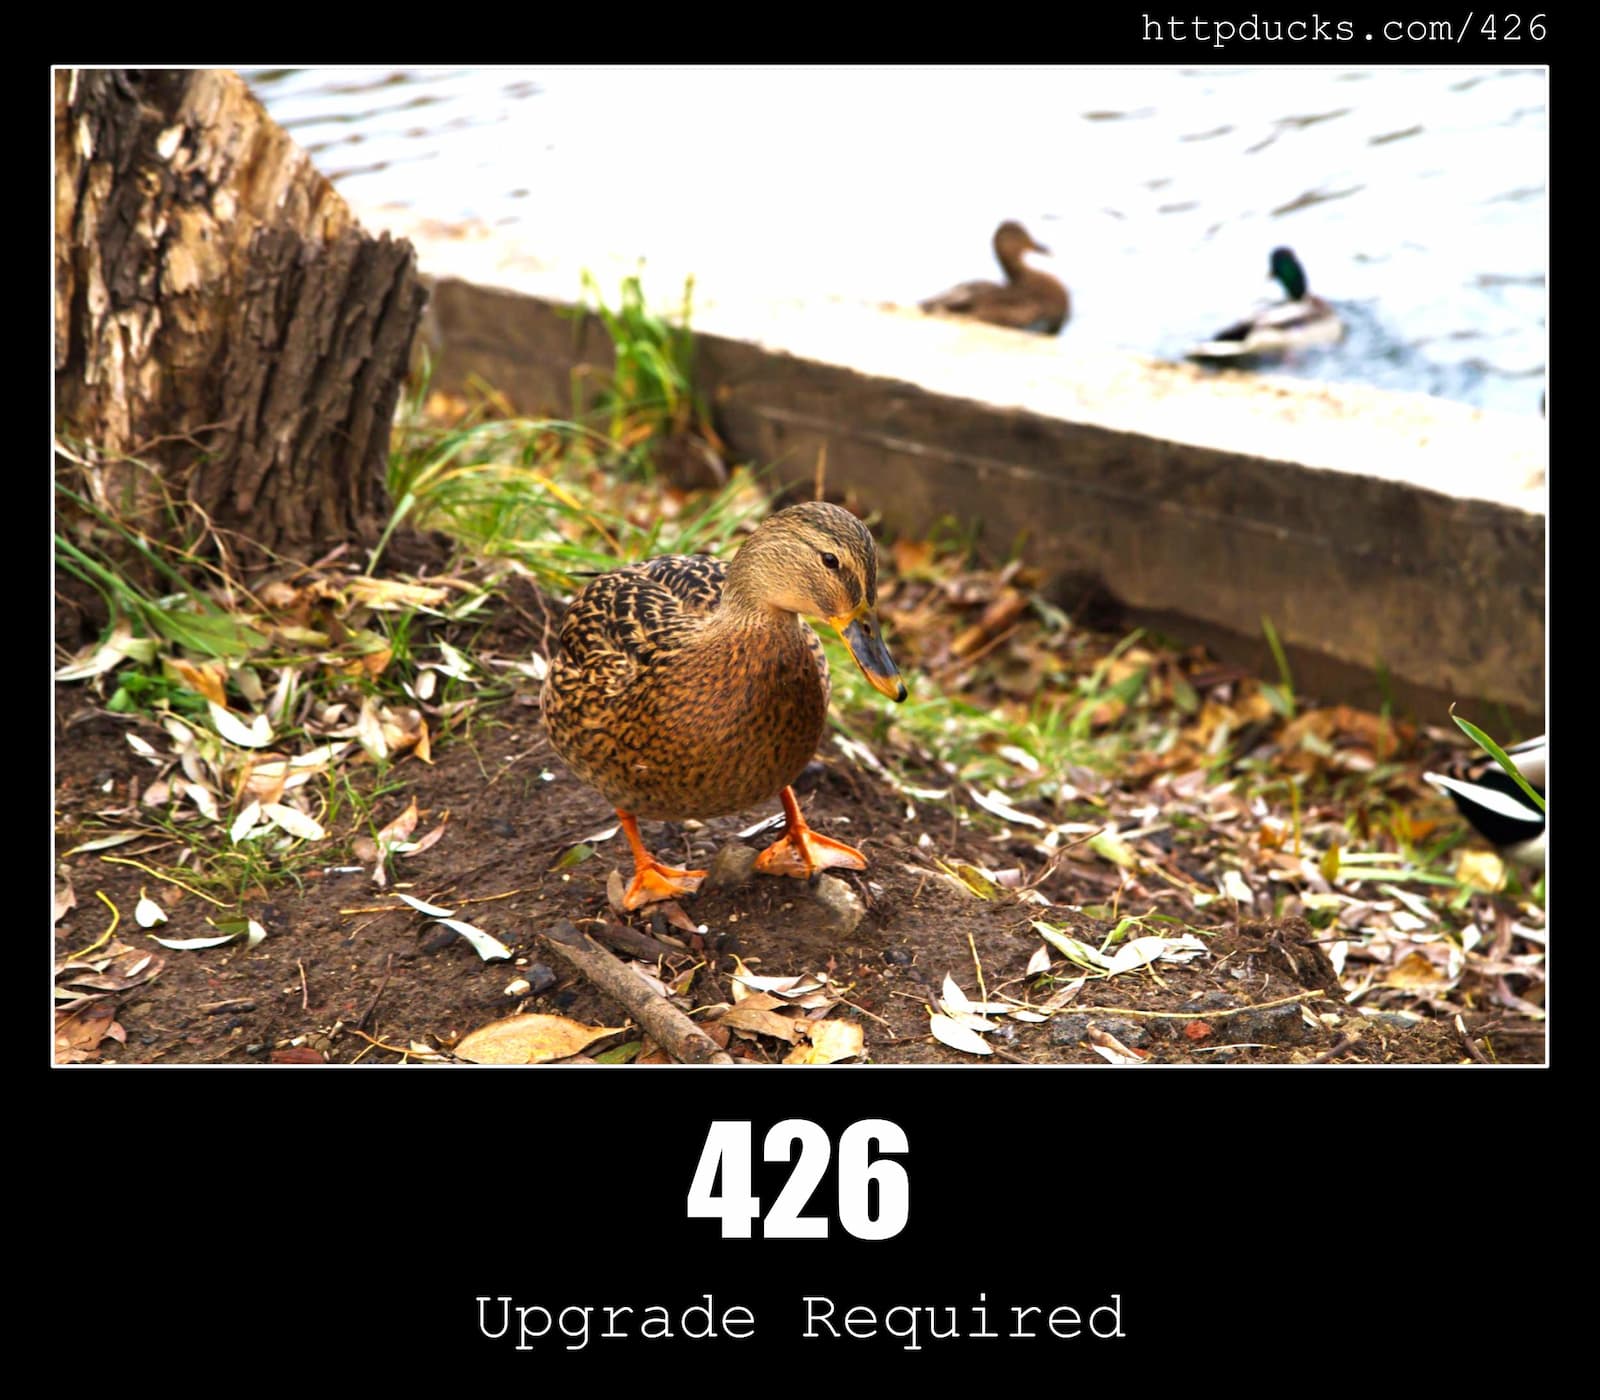 HTTP Status Code 426 Upgrade Required & Ducks